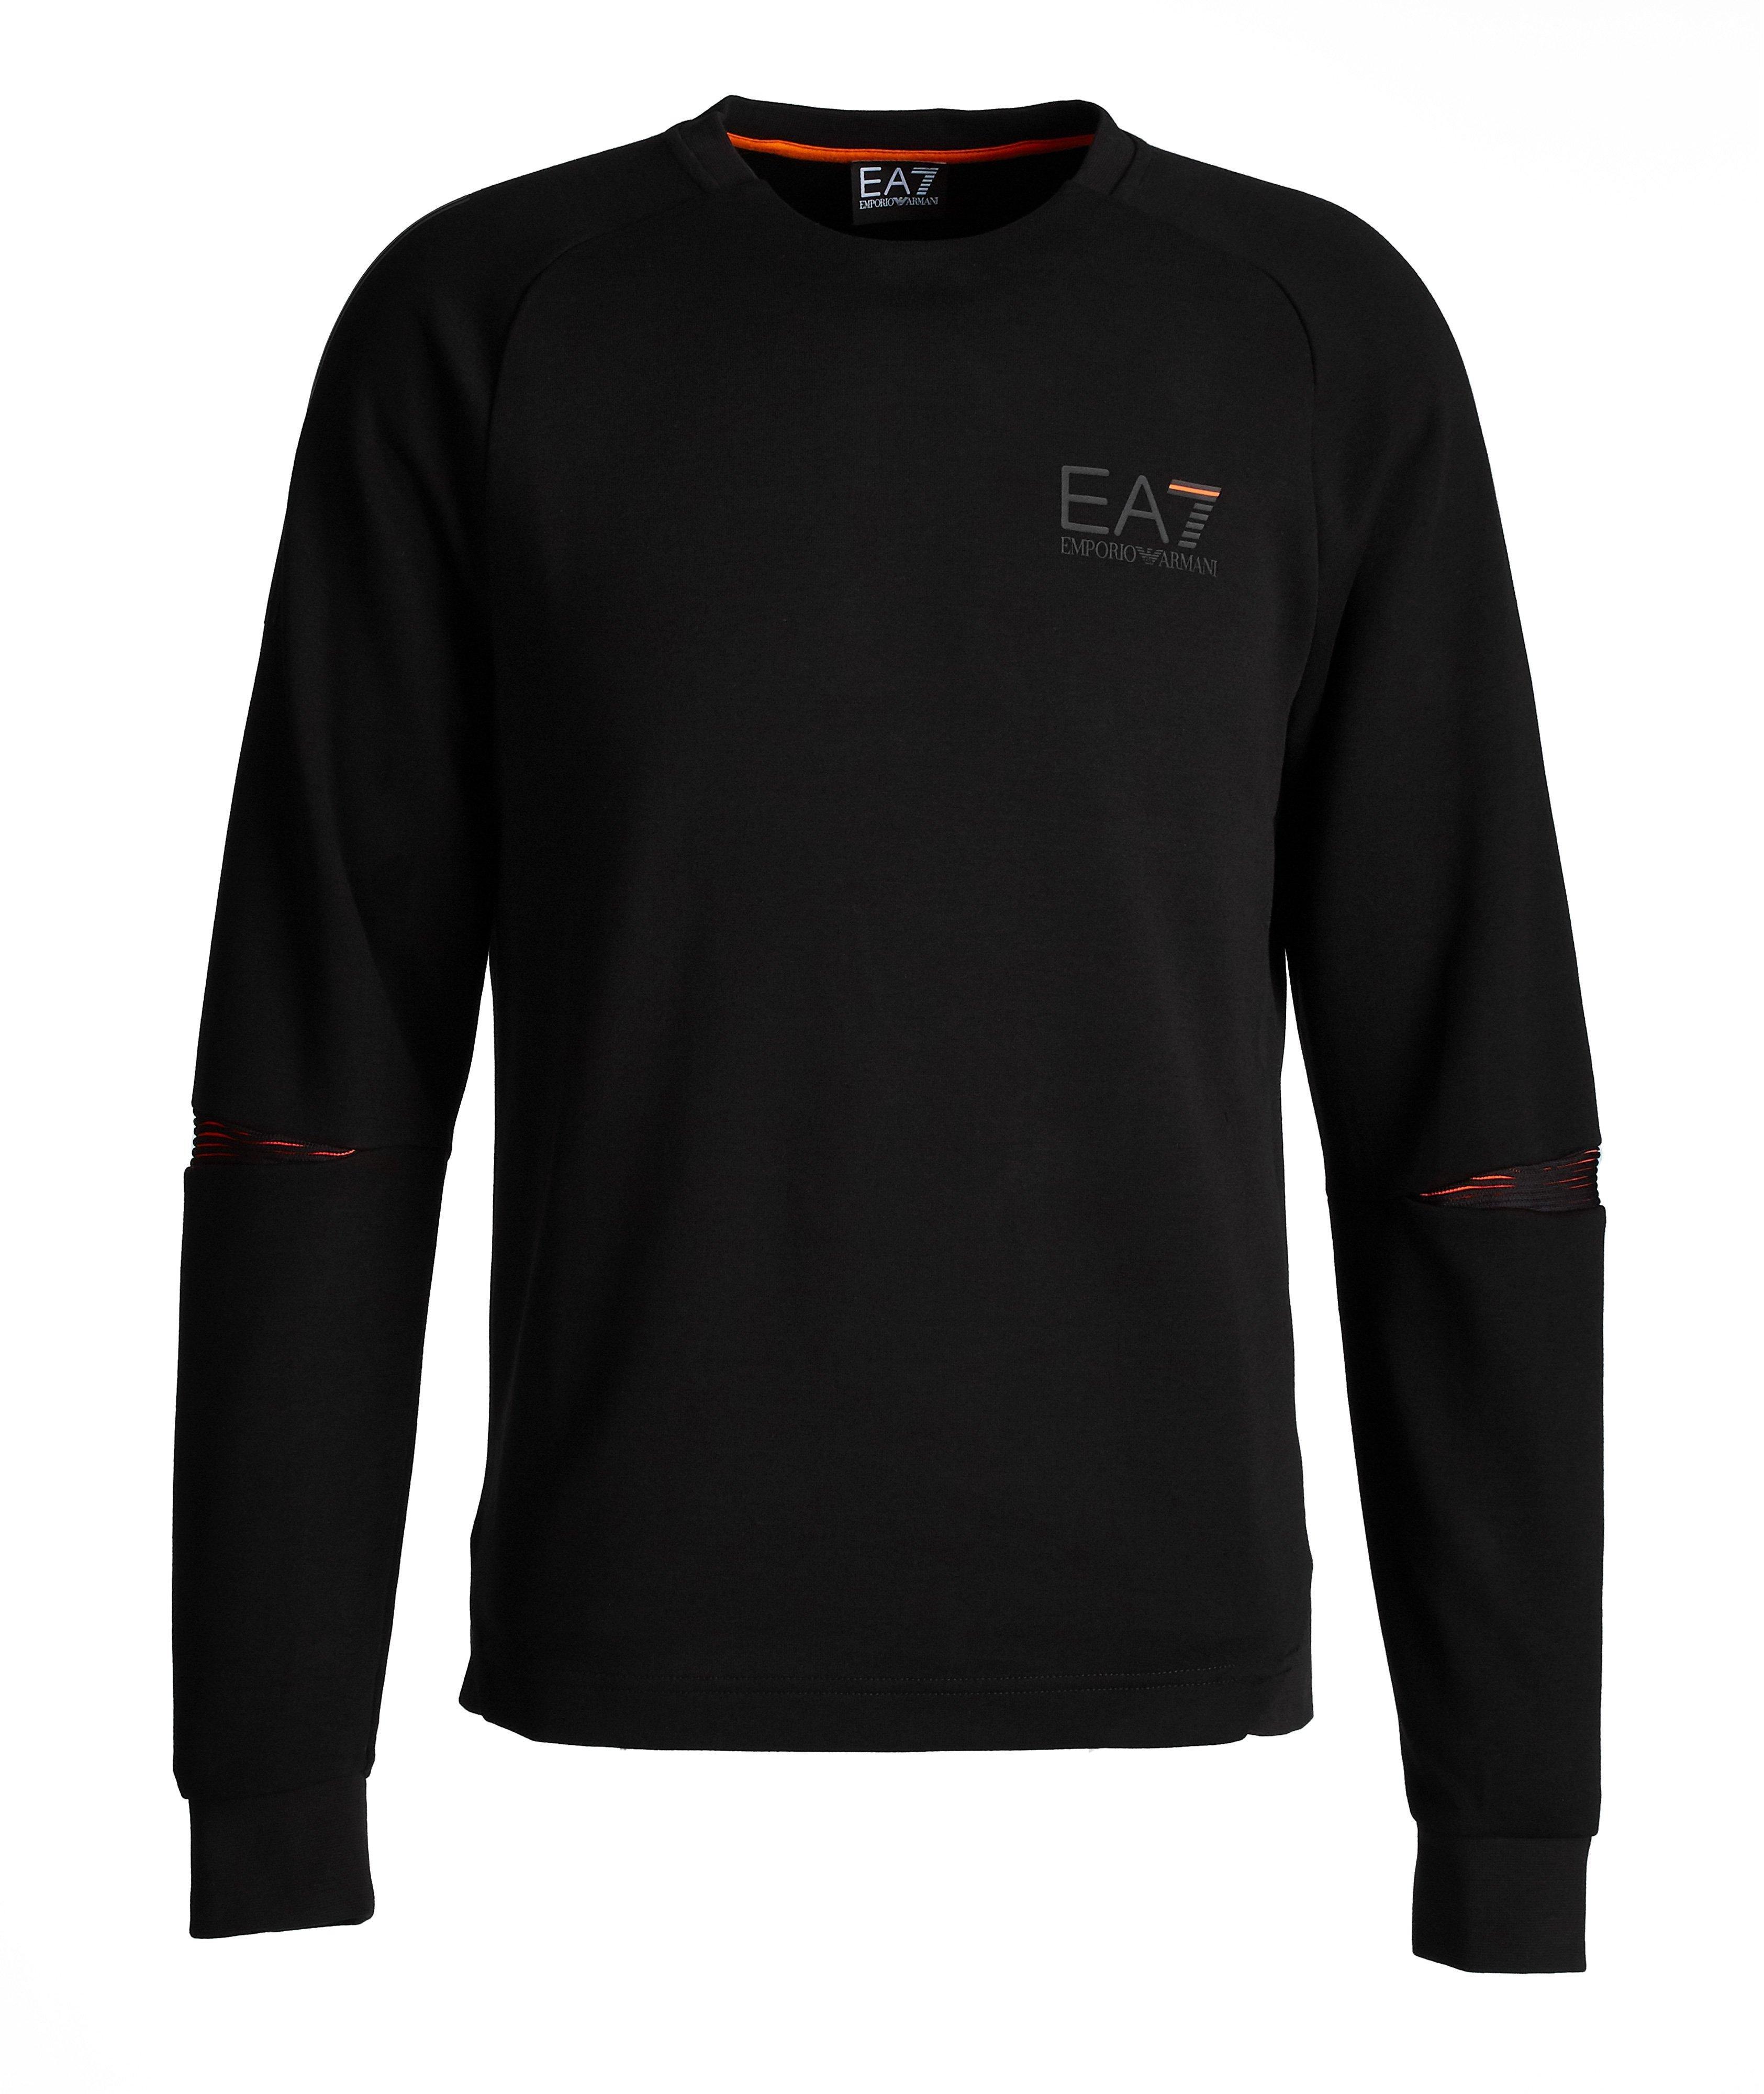 EA7 Cotton-Blend Sweatshirt image 0